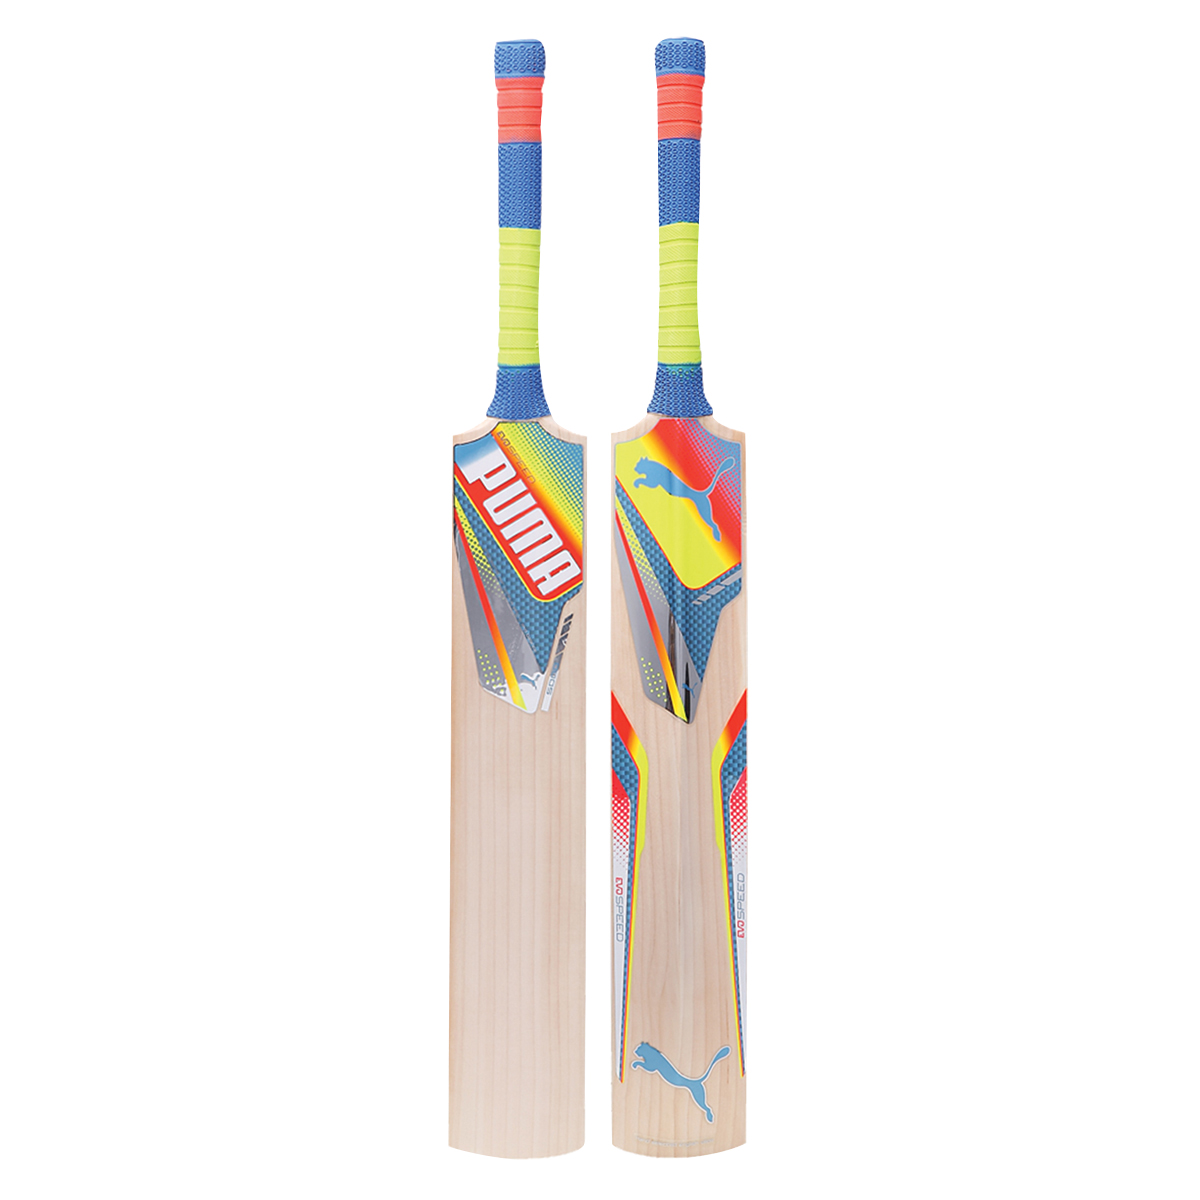 puma evopower 5000 cricket bat